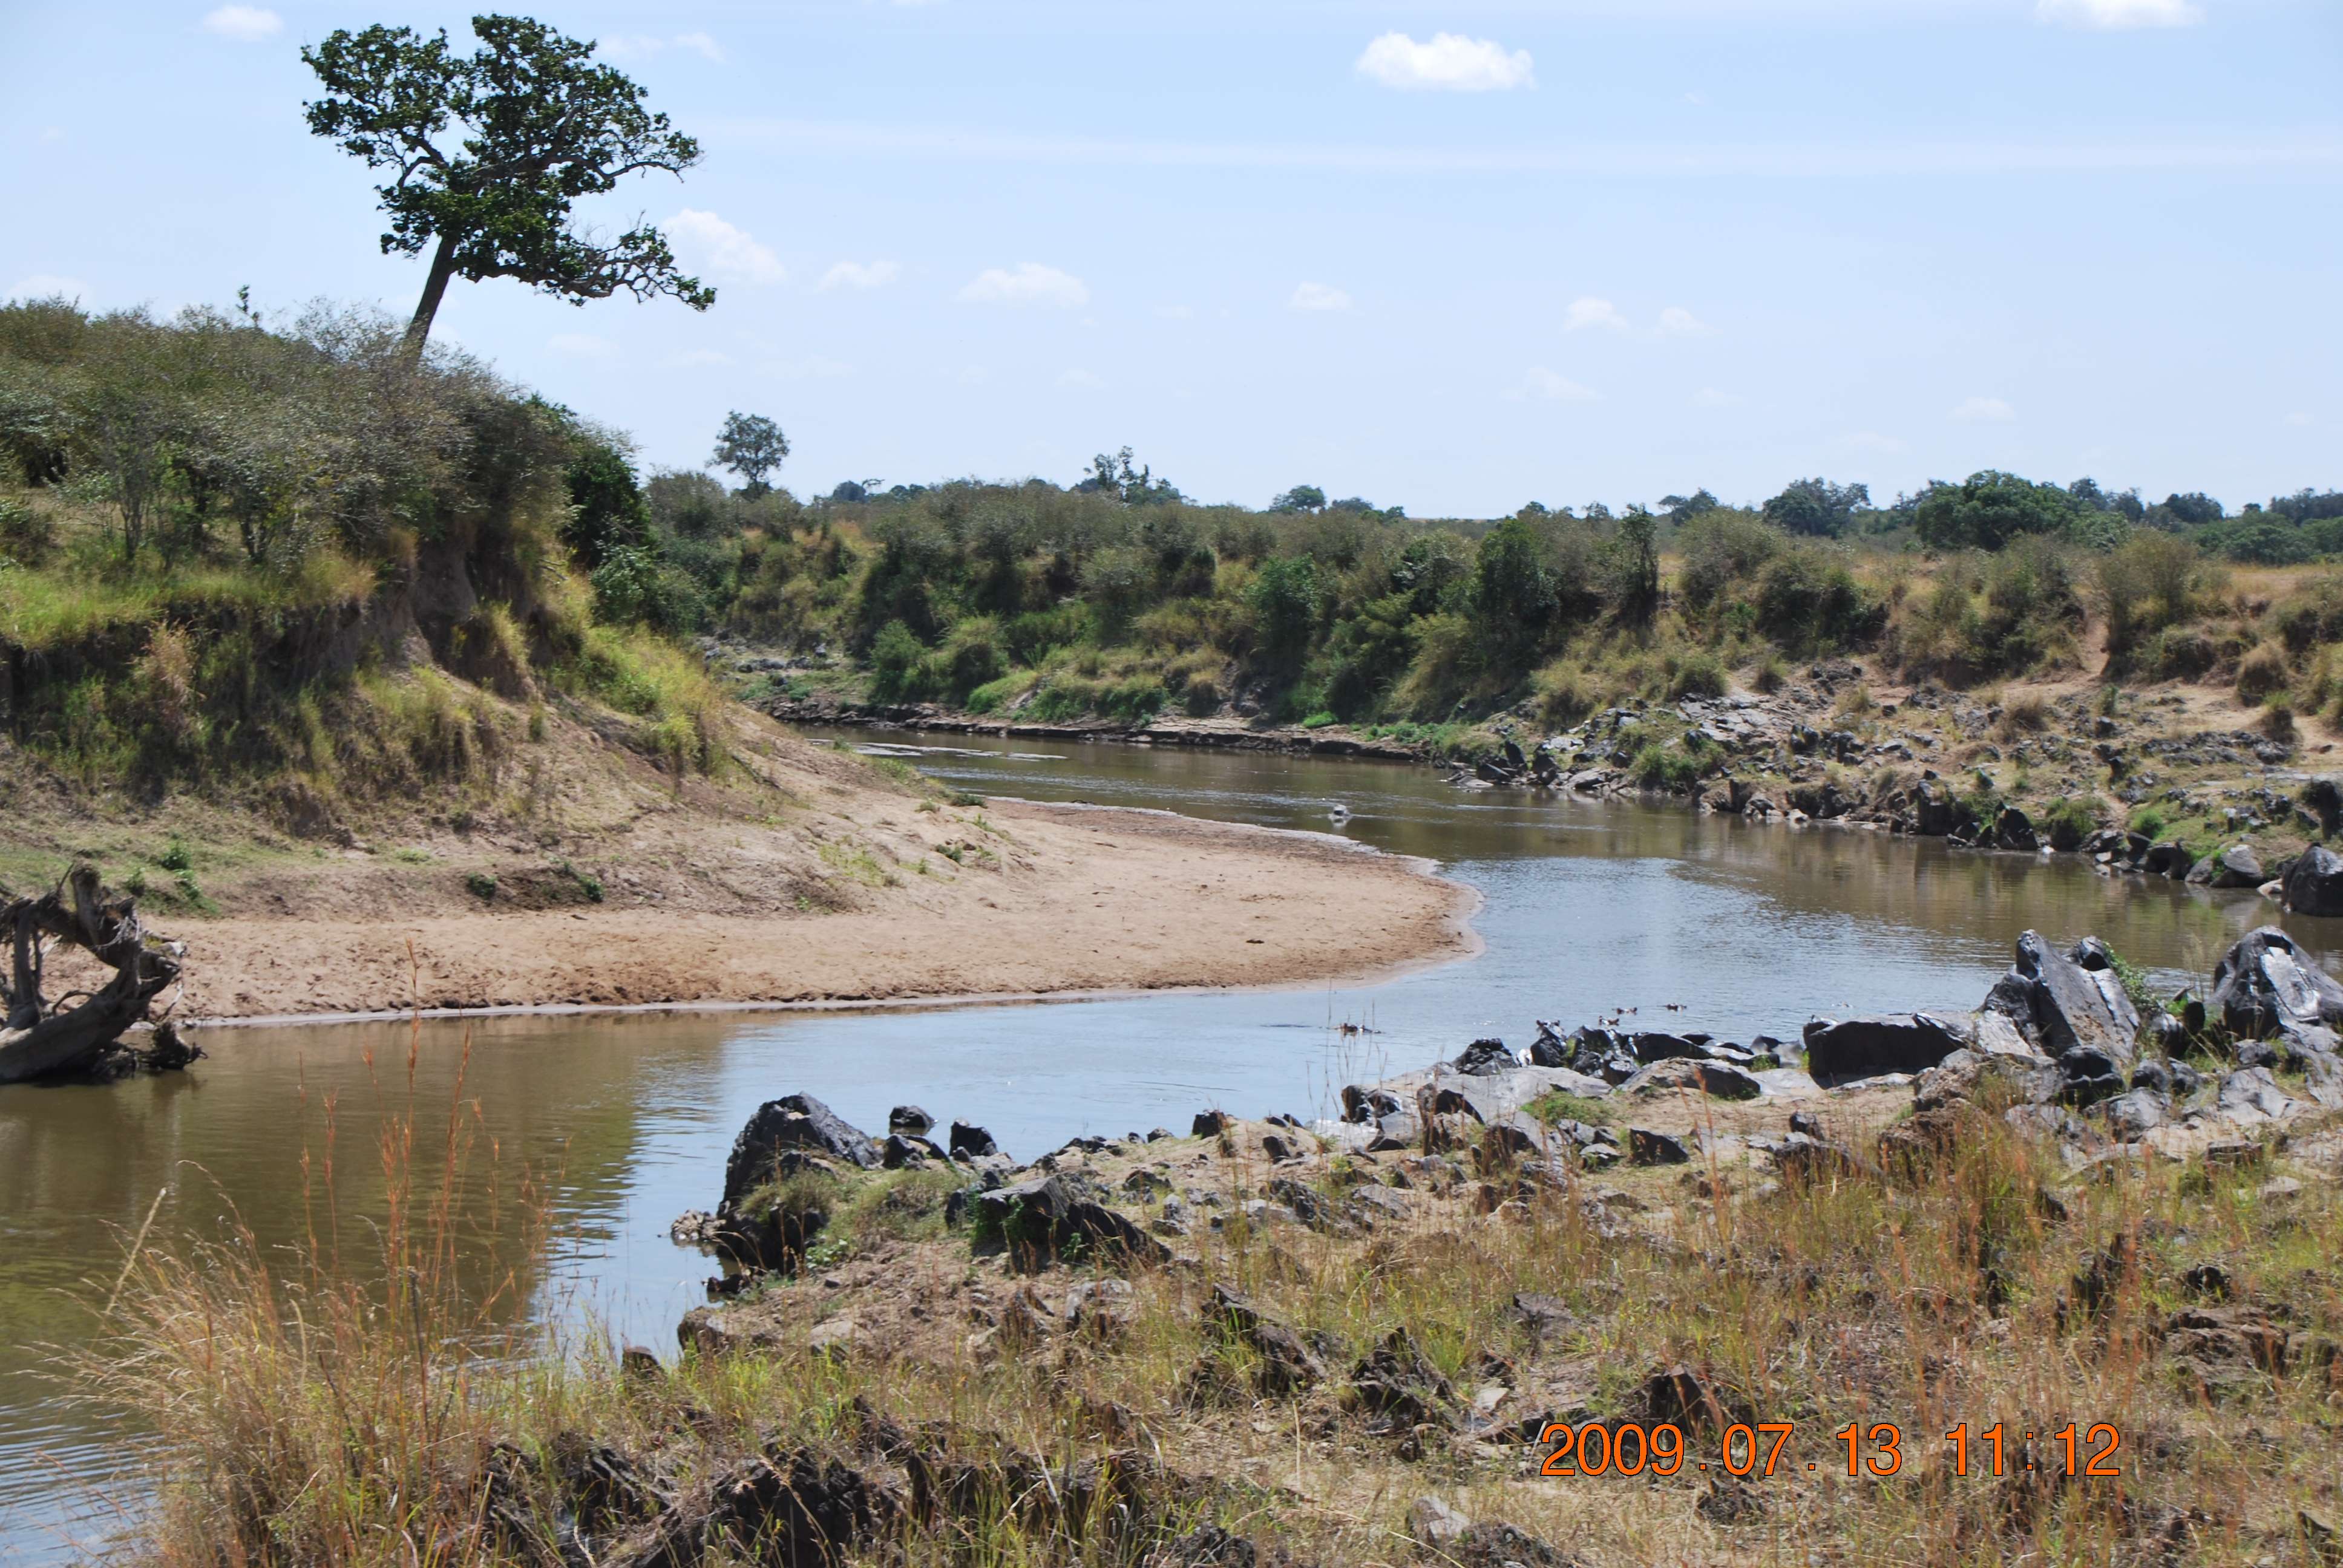 Kenia una experiencia inolvidable - Blogs de Kenia - El cruce del río Mara. (5)